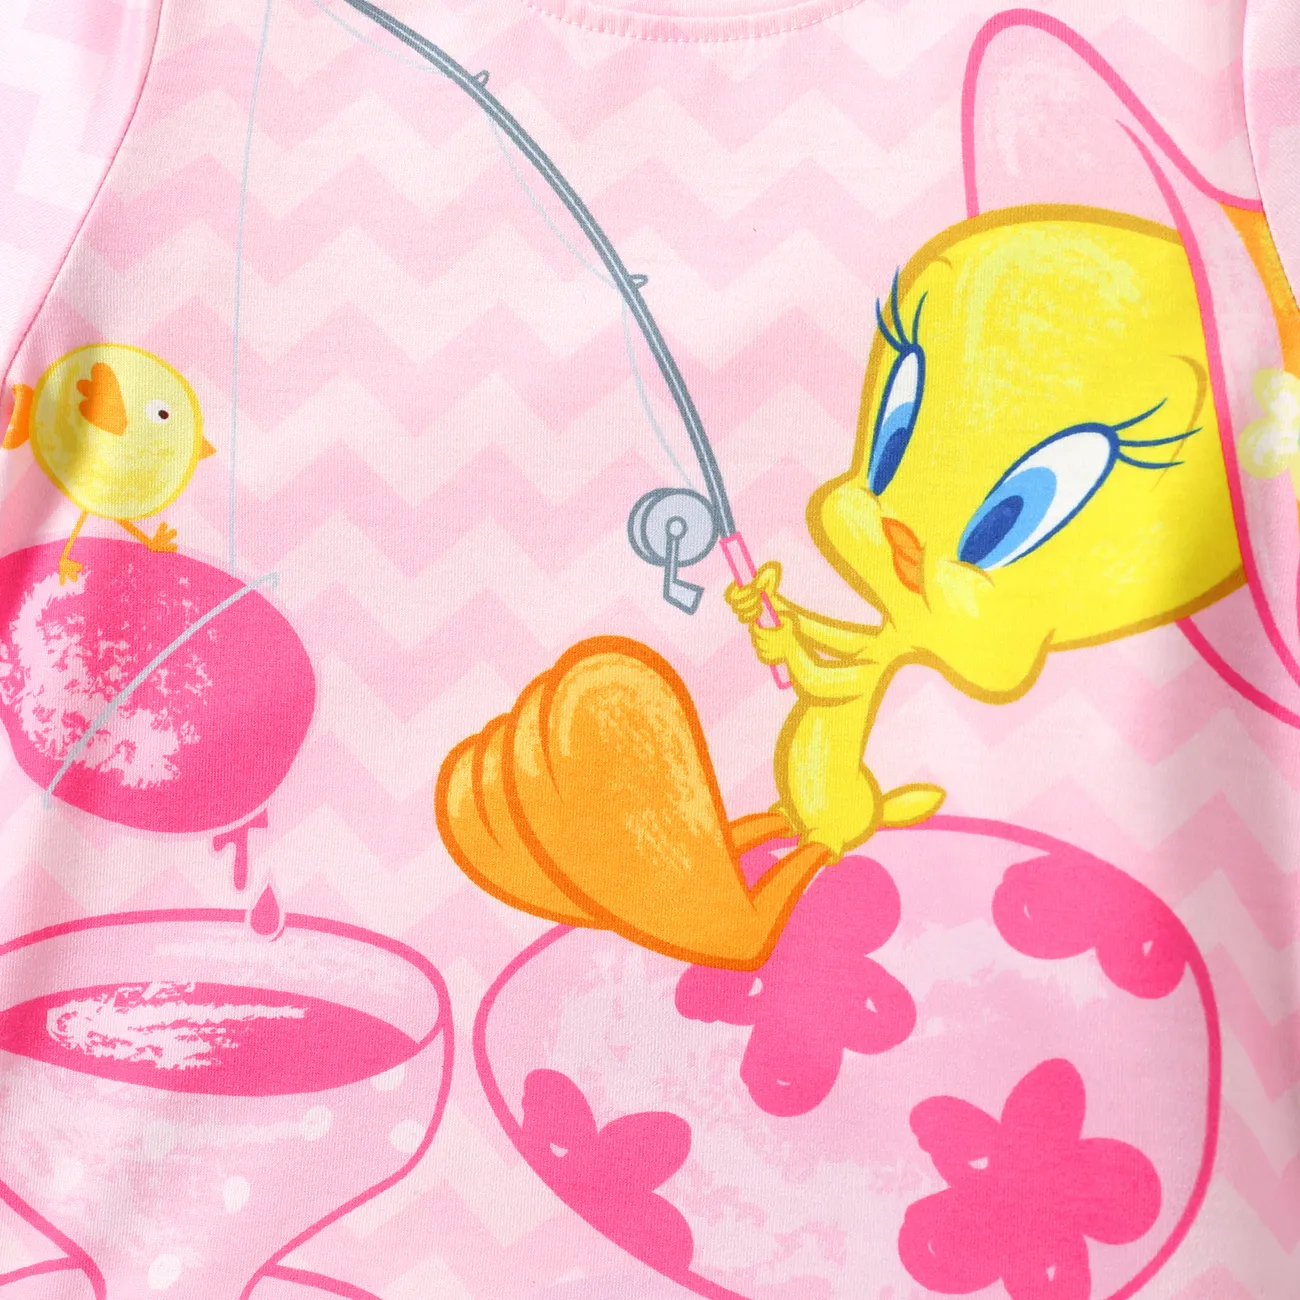 Looney Tunes Pasqua Bambino piccolo Unisex Infantile Manica corta Maglietta Rosa big image 1